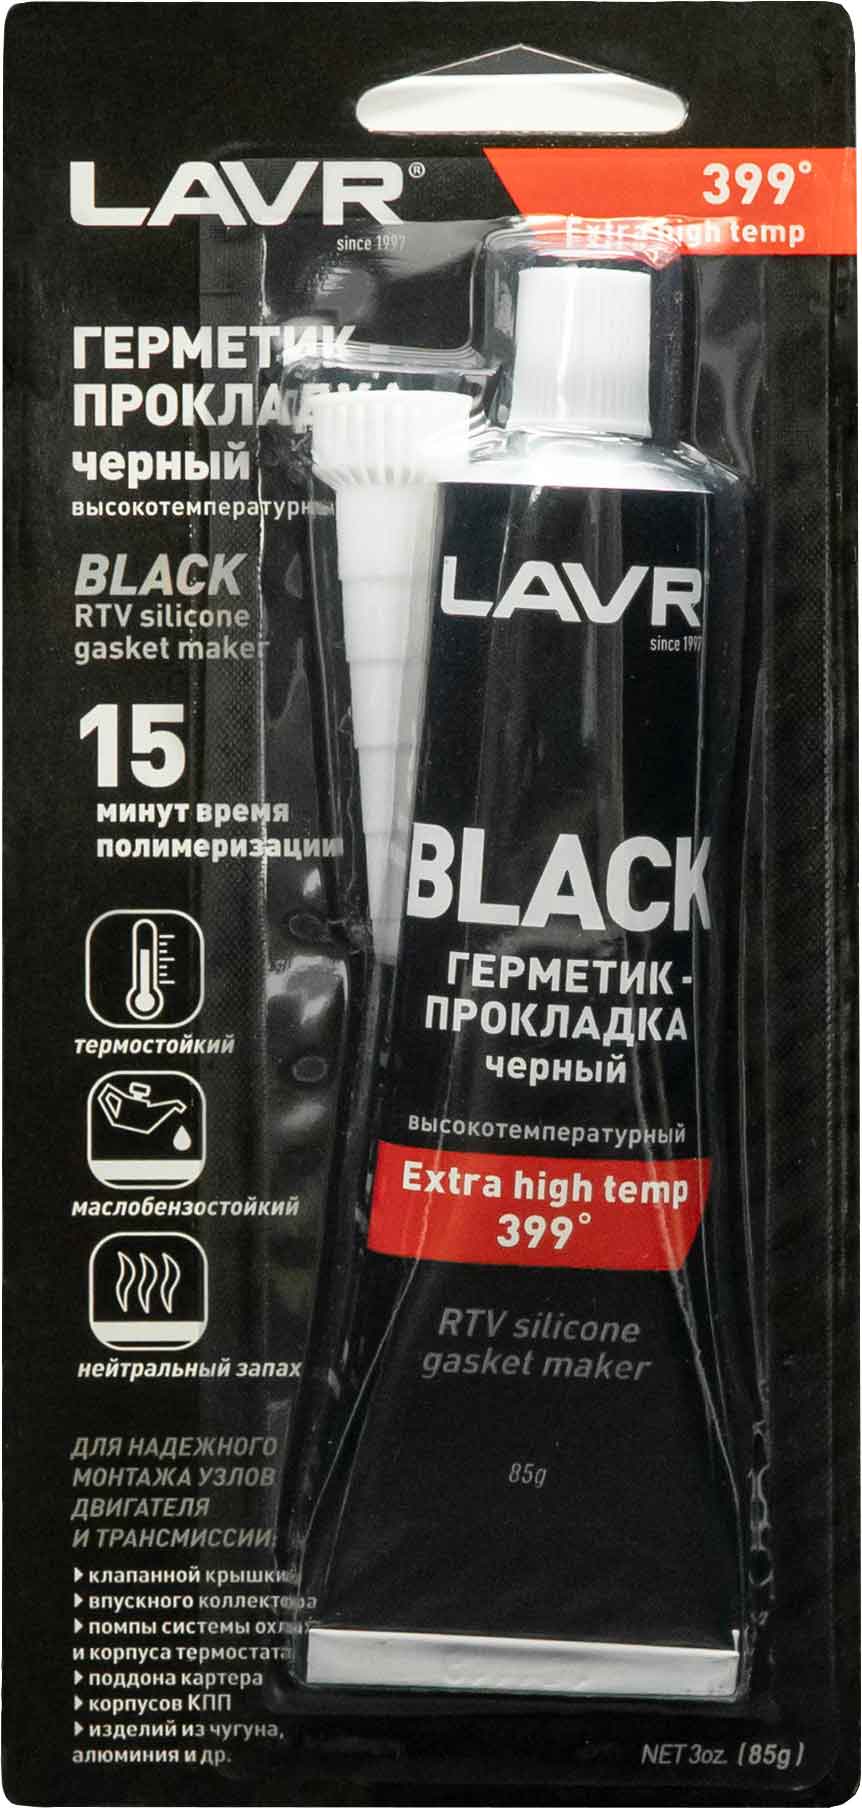 Купить герметик-прокладку черный высокотемпературный ЛАВР в 